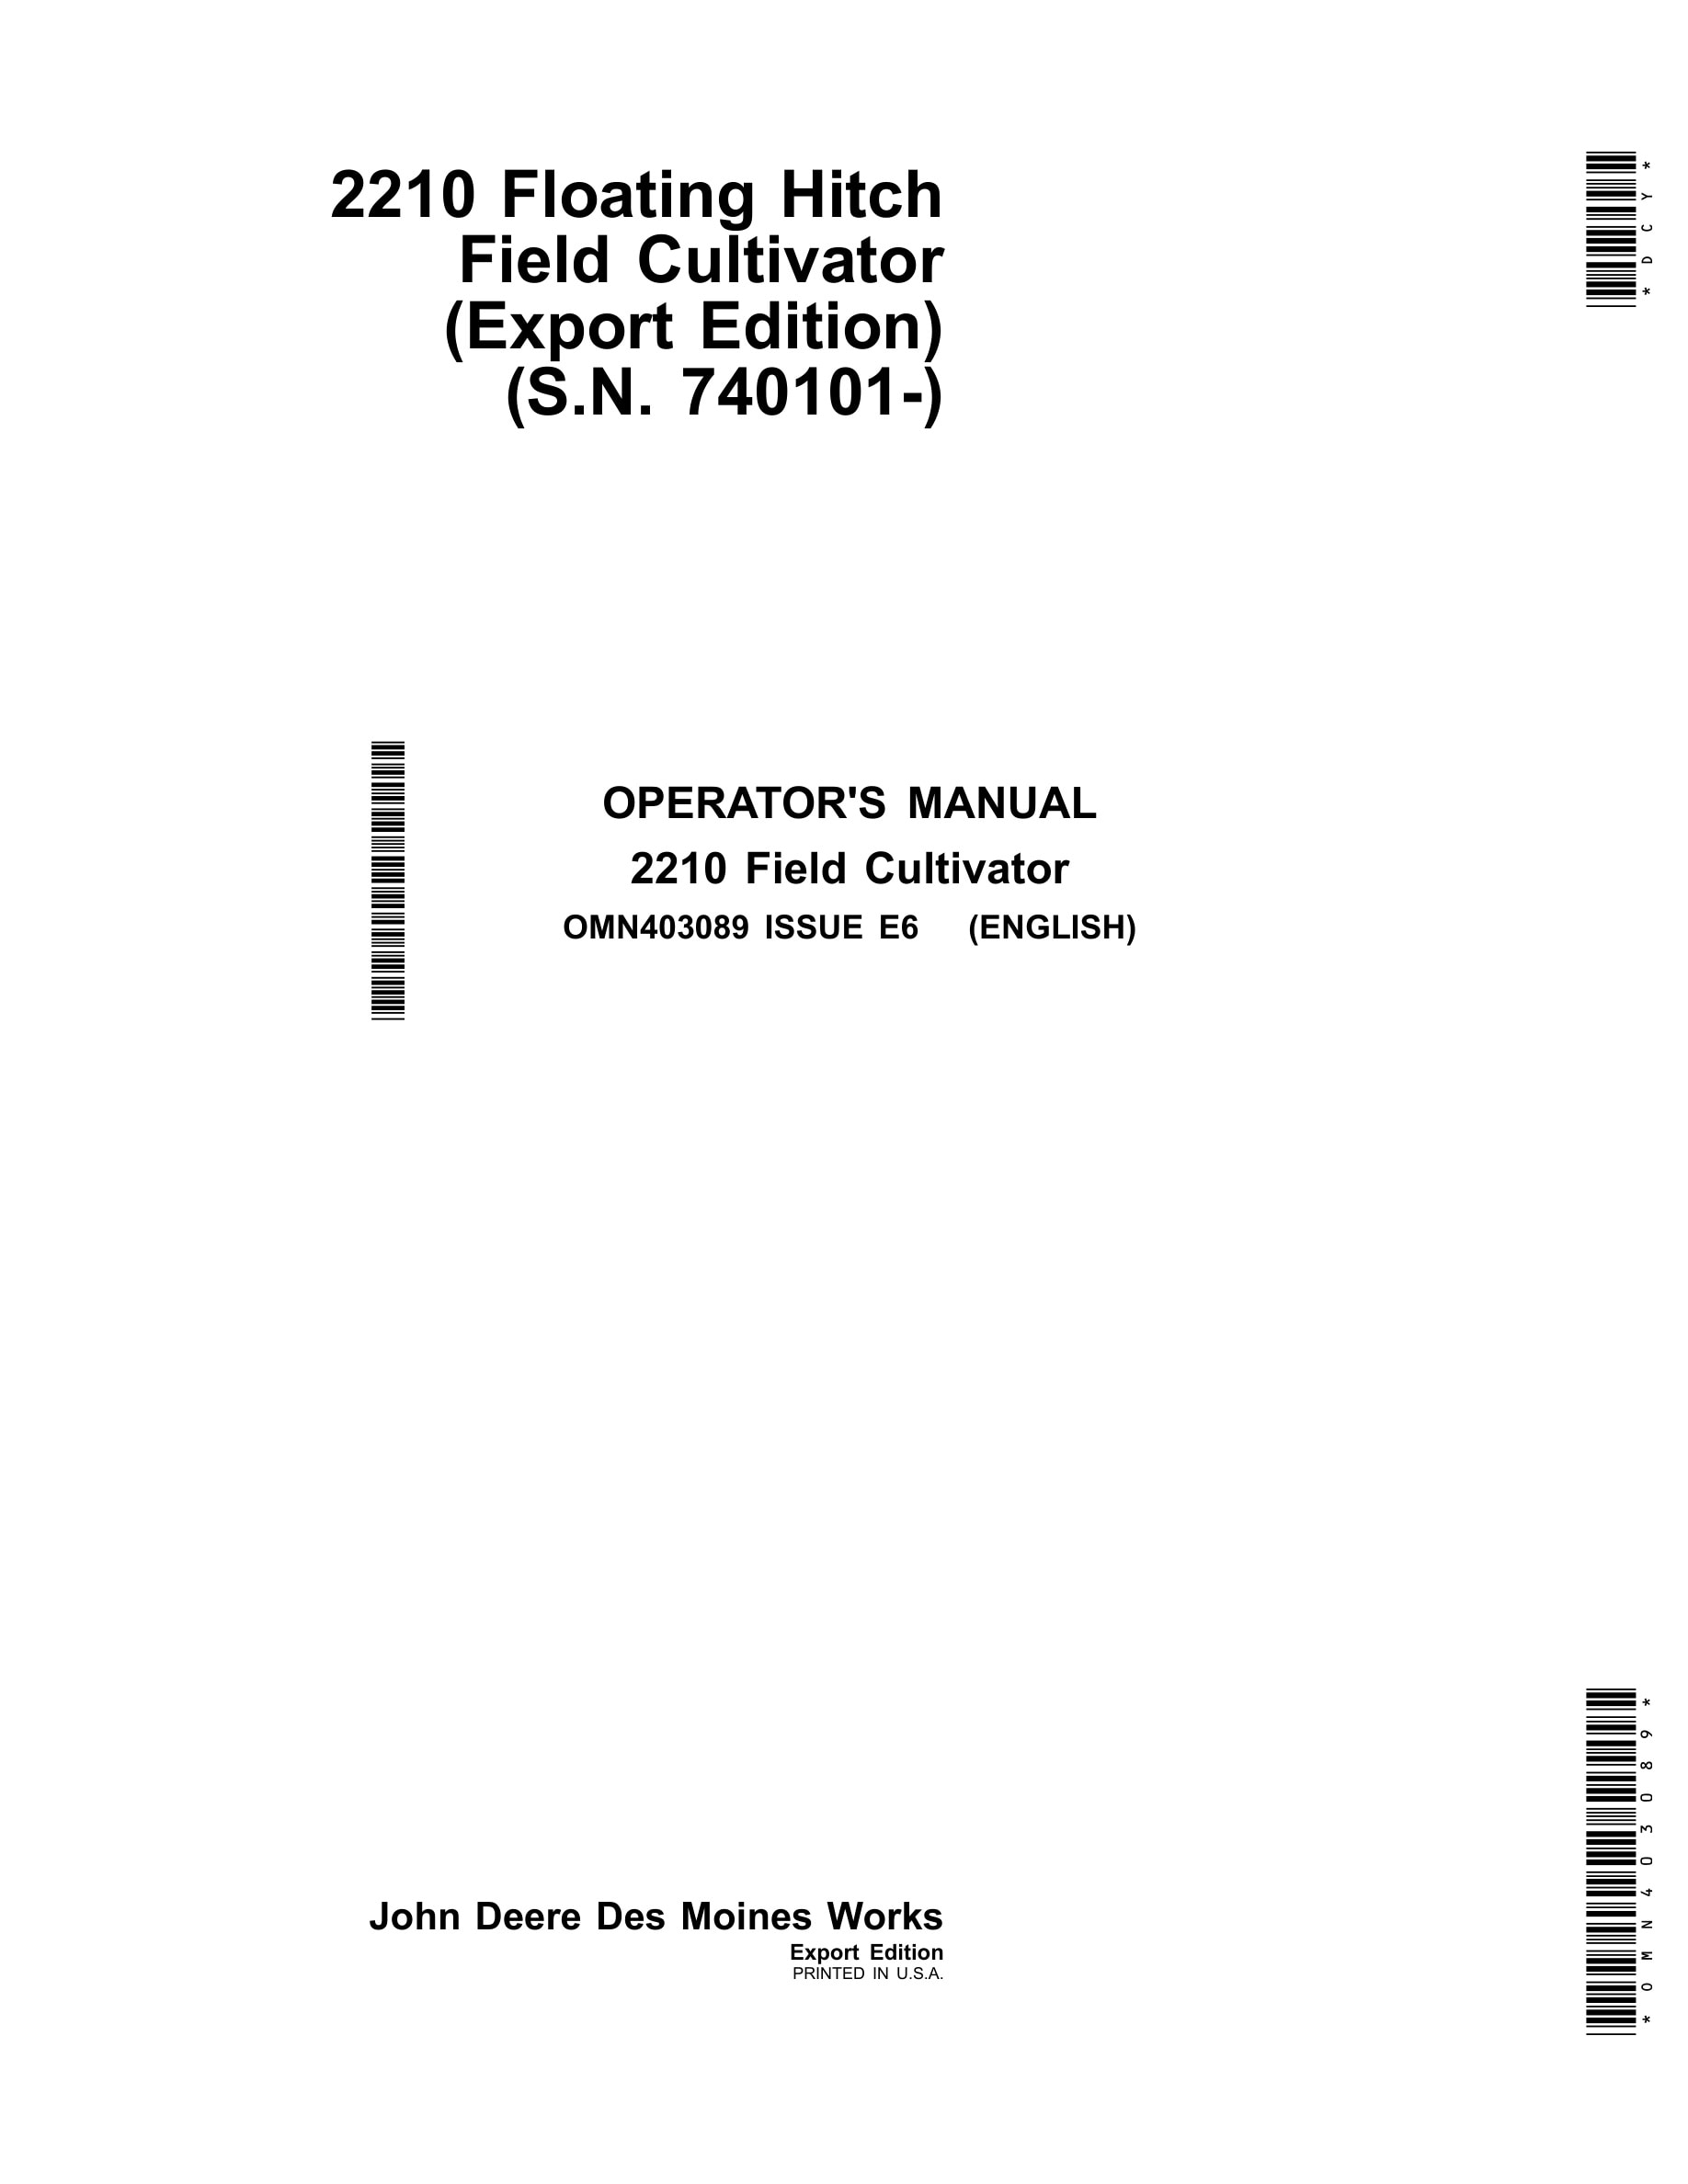 John Deere 2210 Floating Hitch Field Cultivator Operator Manual OMN403089-1